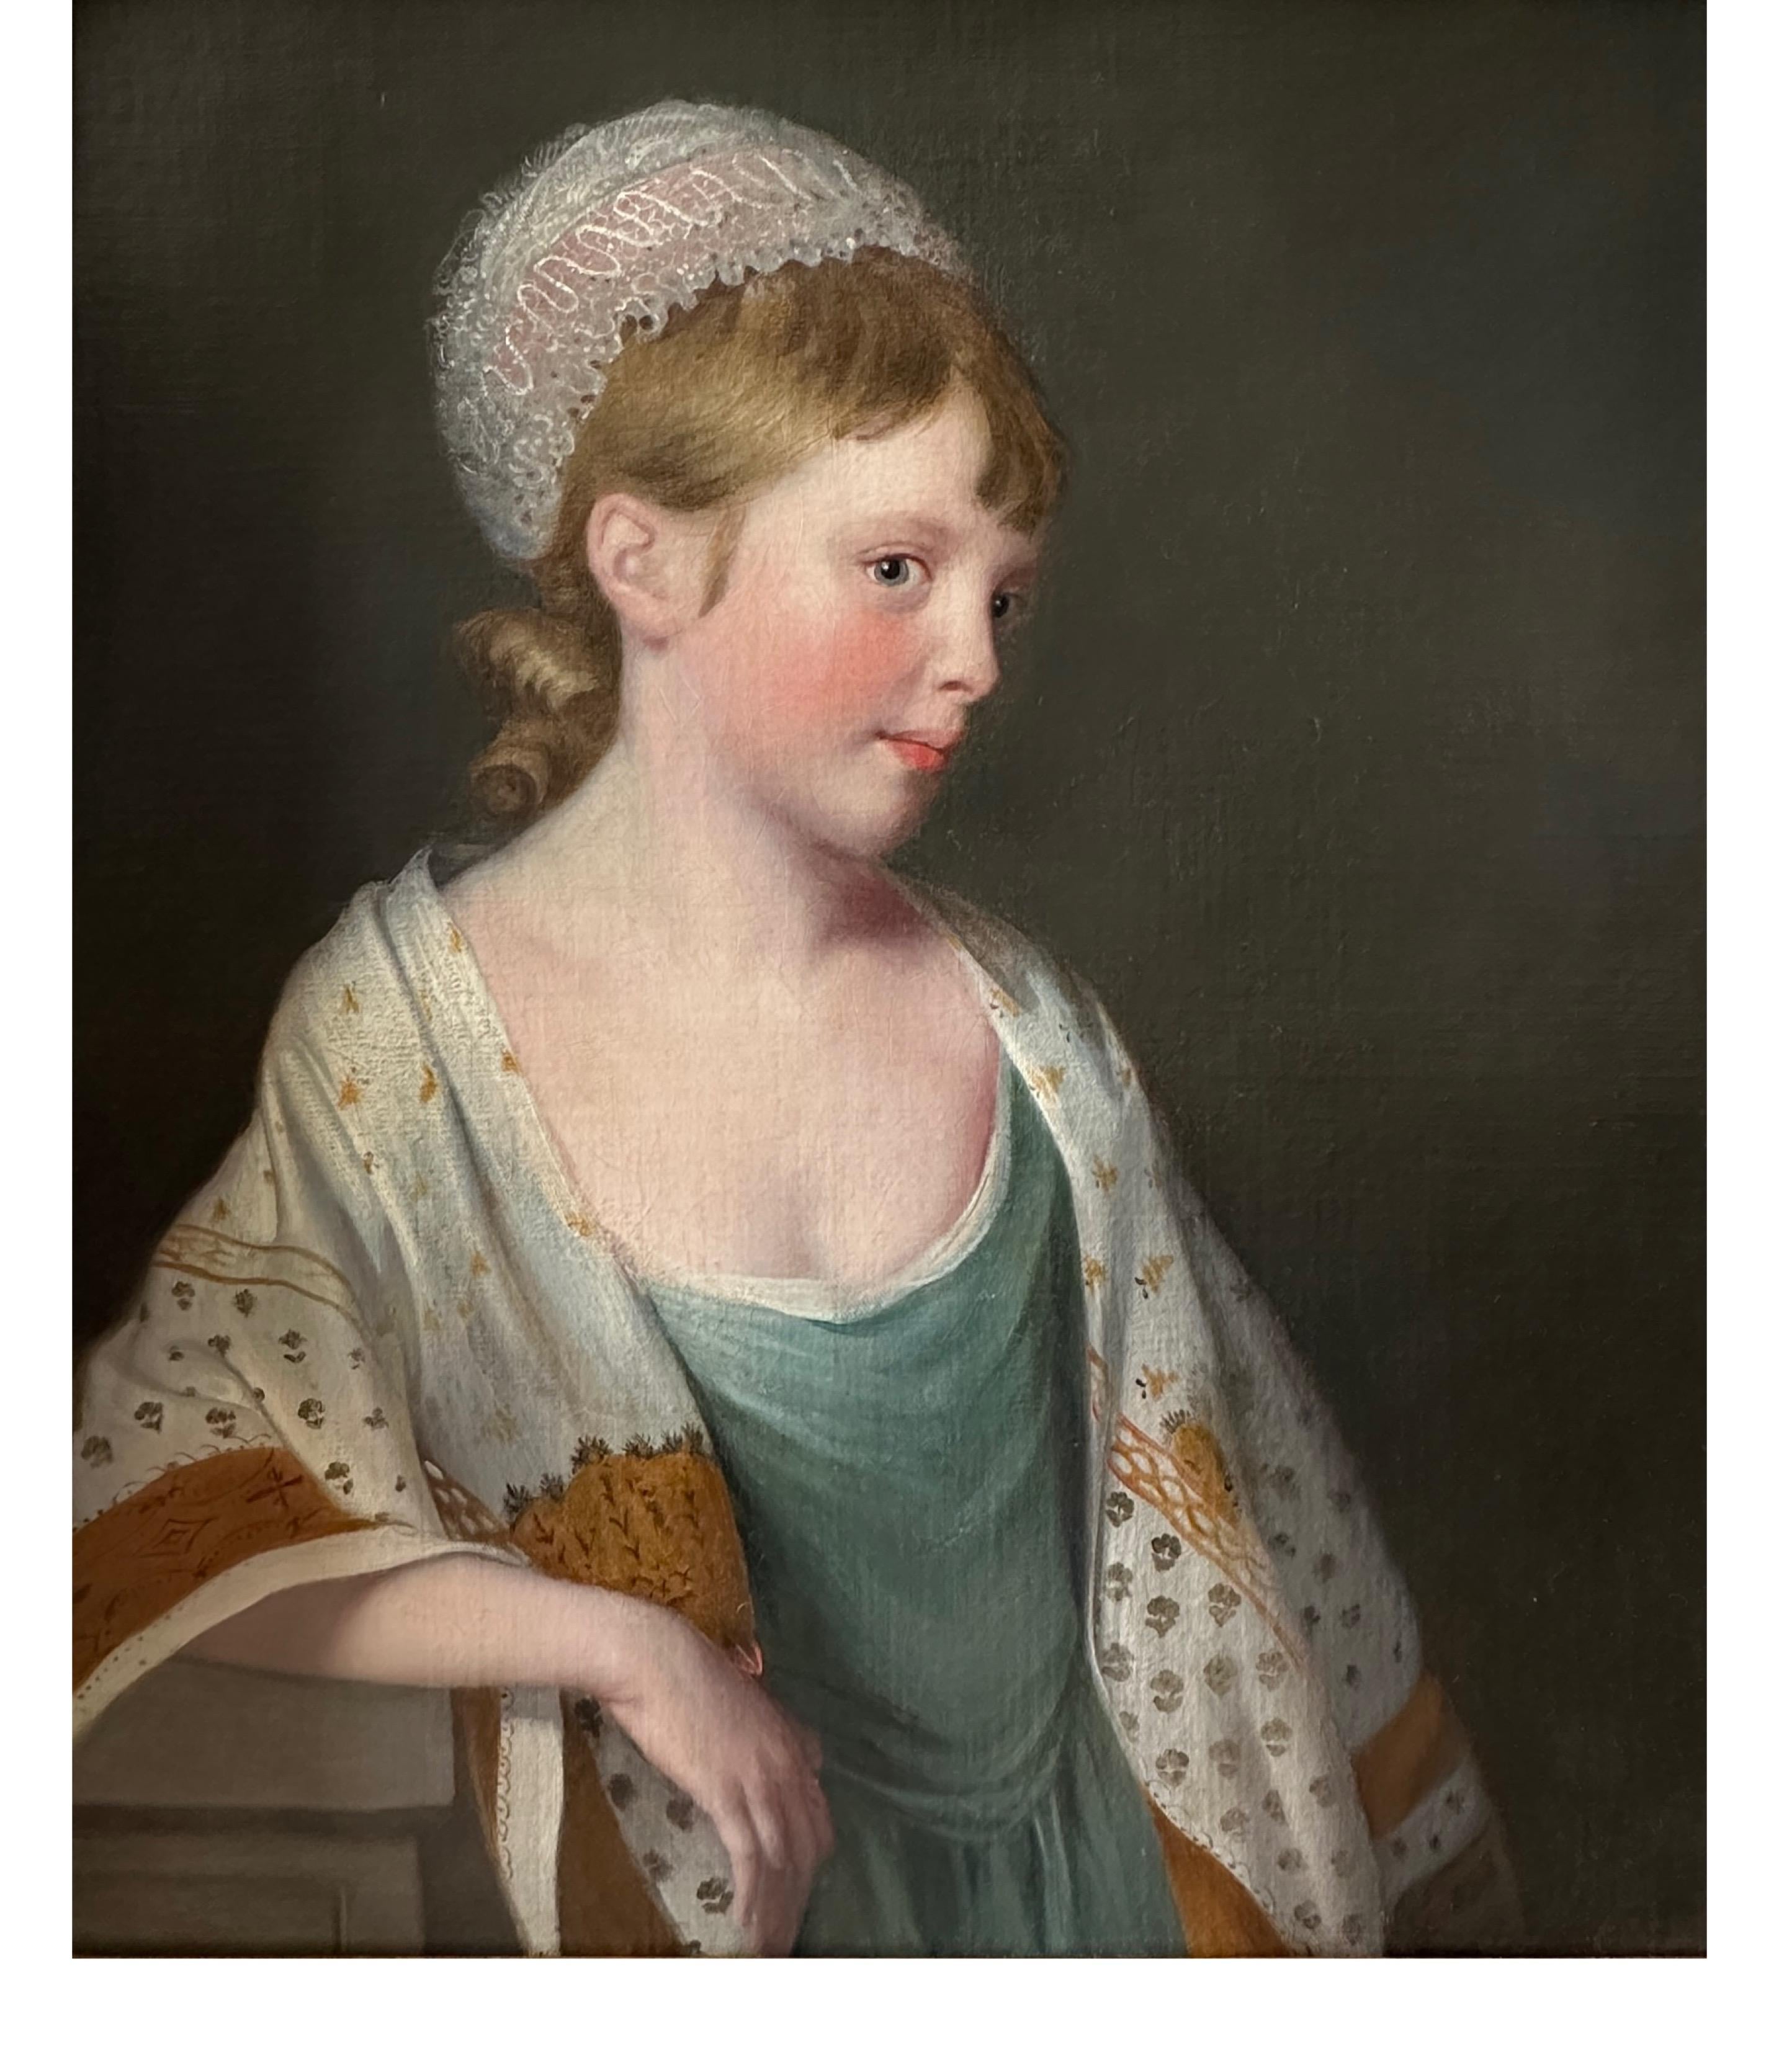 Porträt eines jungen Mädchens mit Kapuze und gemustertem Schal aus dem 18. Jahrhundert – Painting von Tilly Kettle